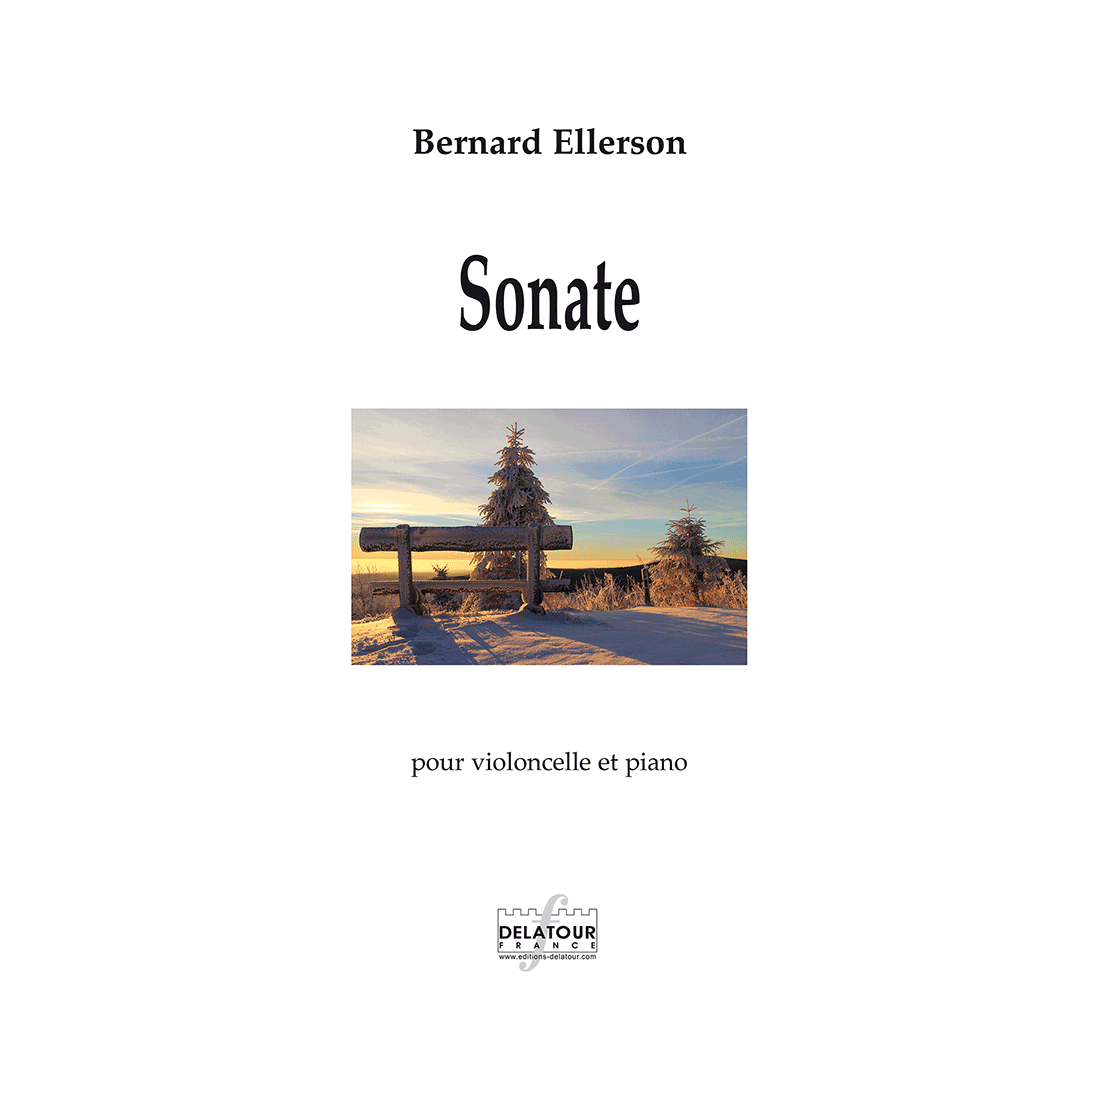 Sonate für Violoncello und Klavier